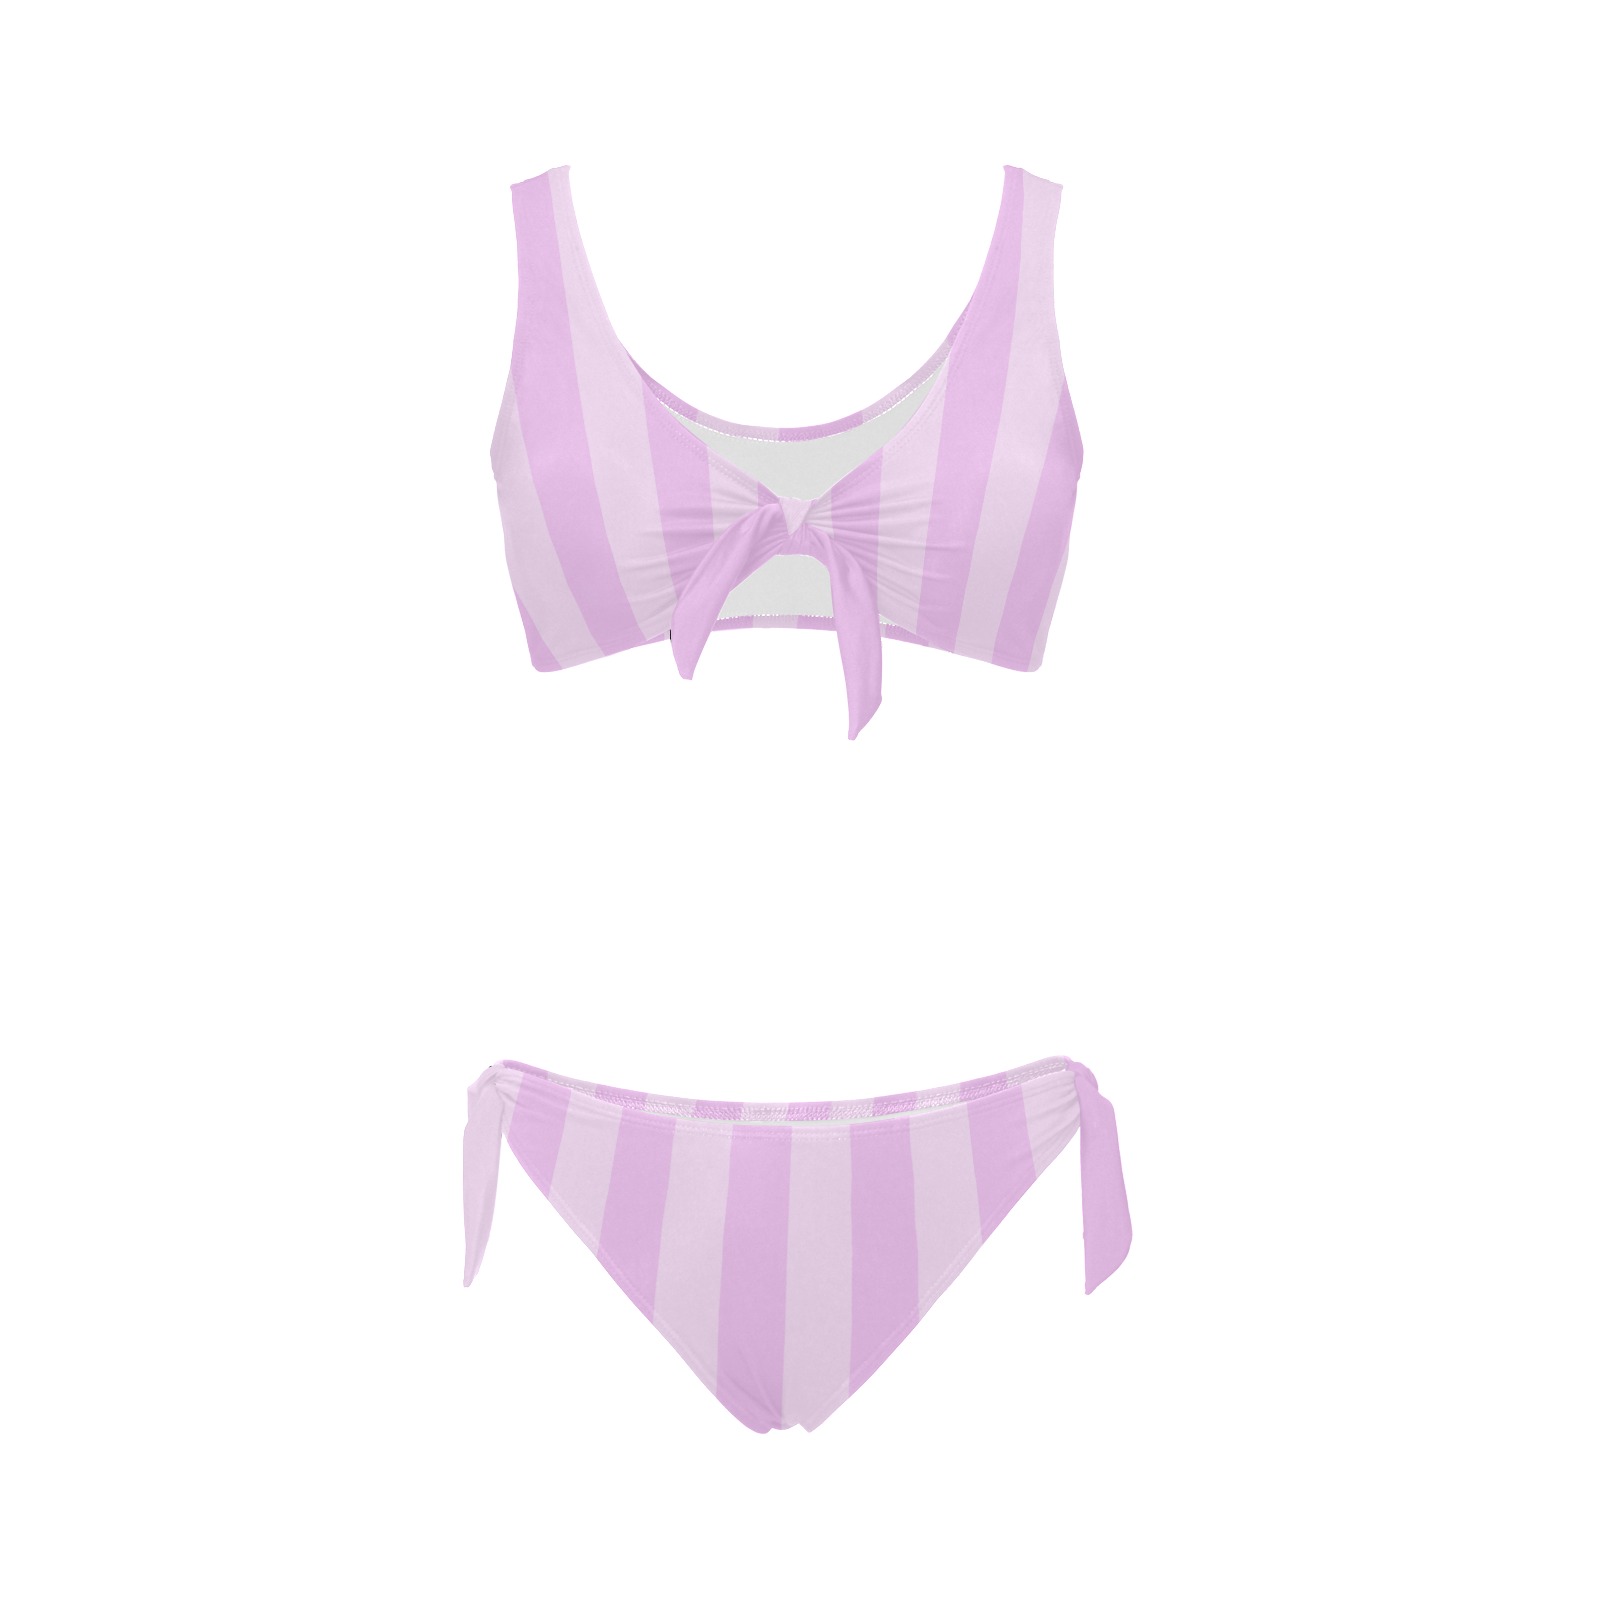 CandyStripe Woman's Swimwear Pink Bow Tie Front Bikini Swimsuit (Model S38)